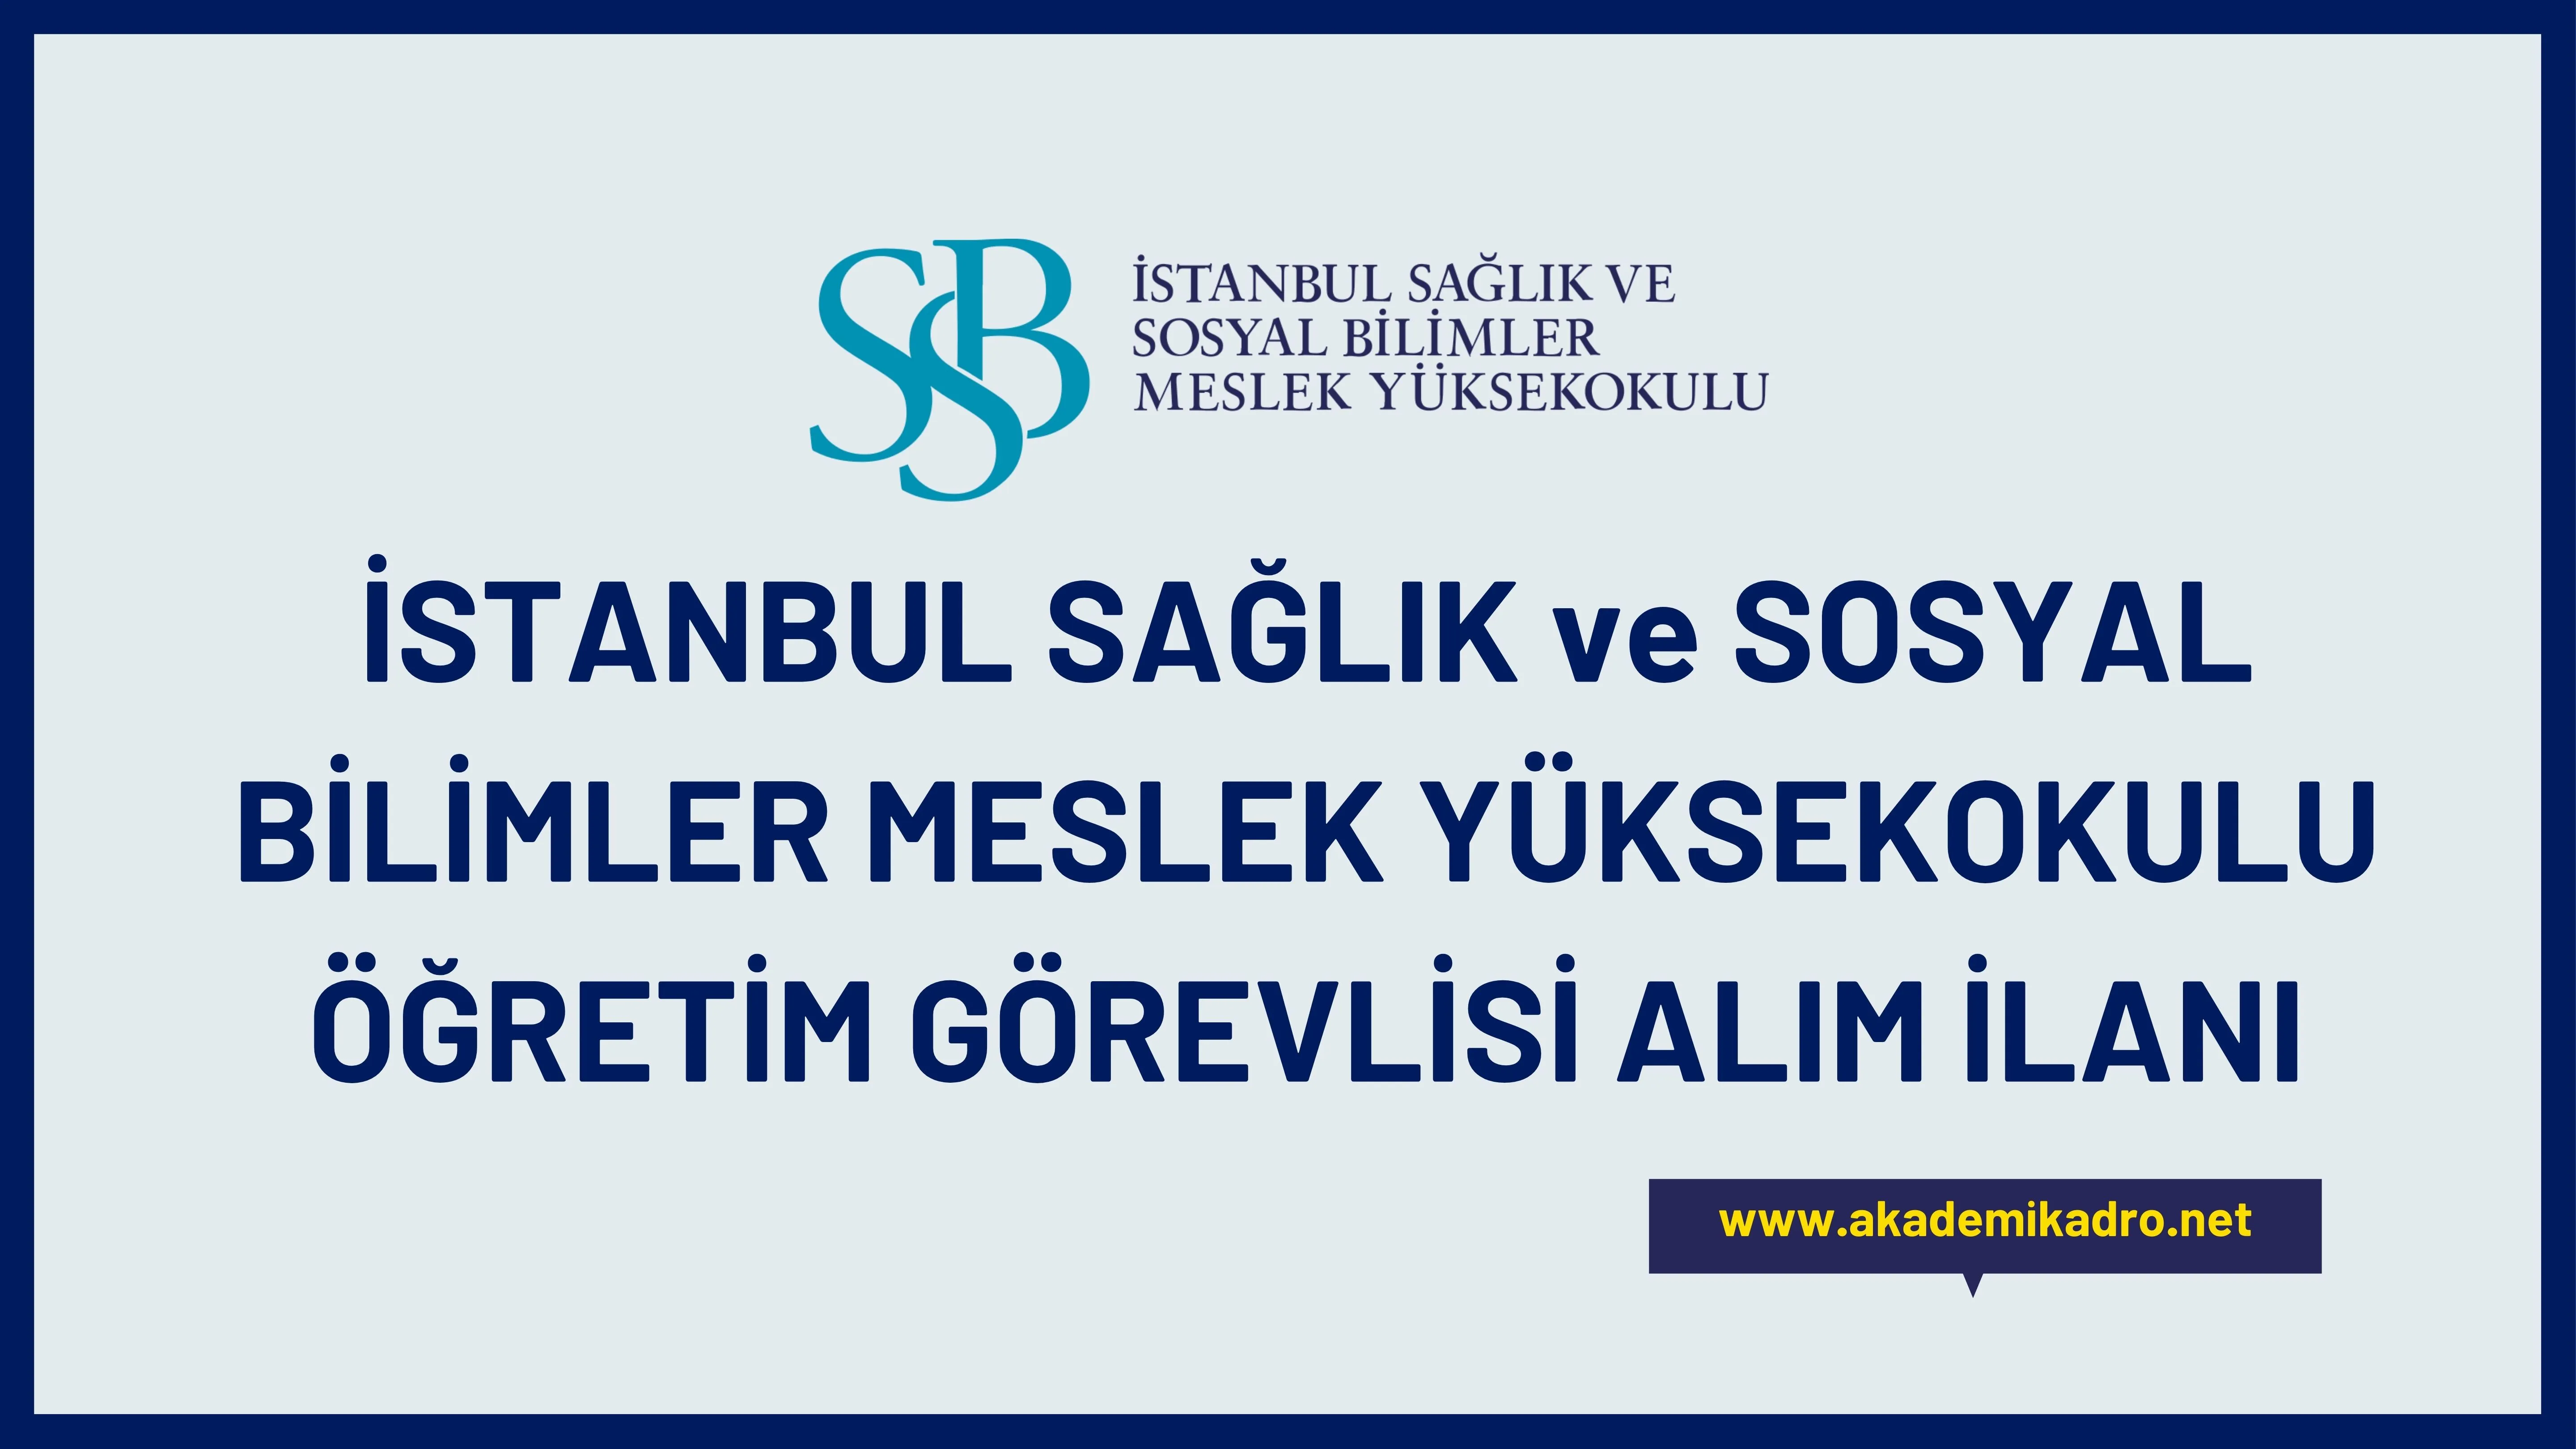 İstanbul Sağlık ve Sosyal Bilimler Meslek Yüksekokulu çeşitli alanlarda 6 Öğretim görevlisi alacak.